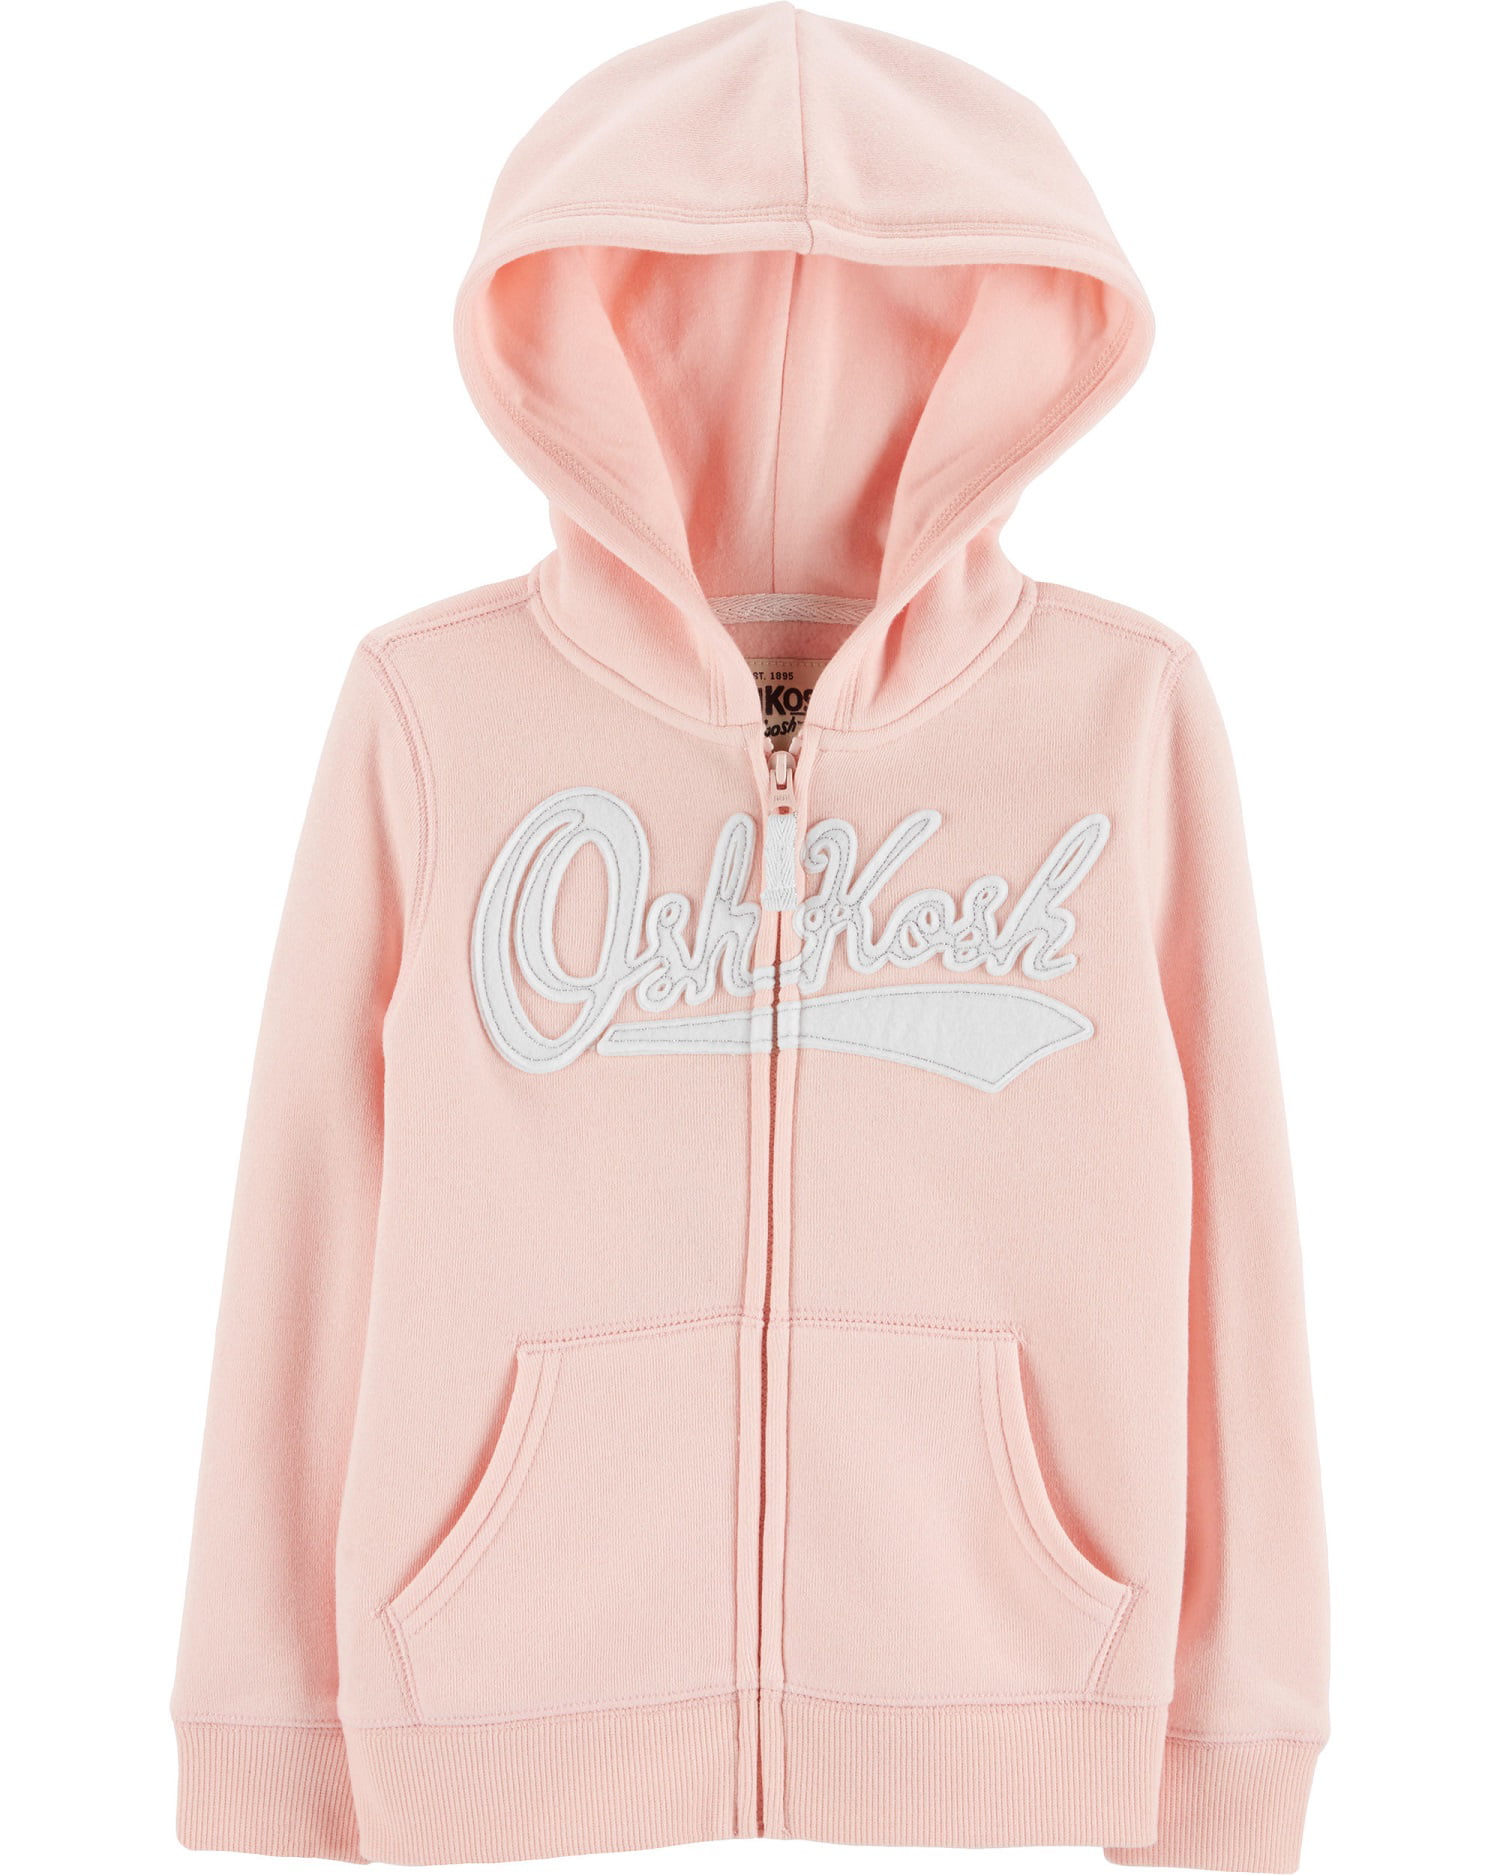 OshKosh Girls Full Zip Logo Hoodie